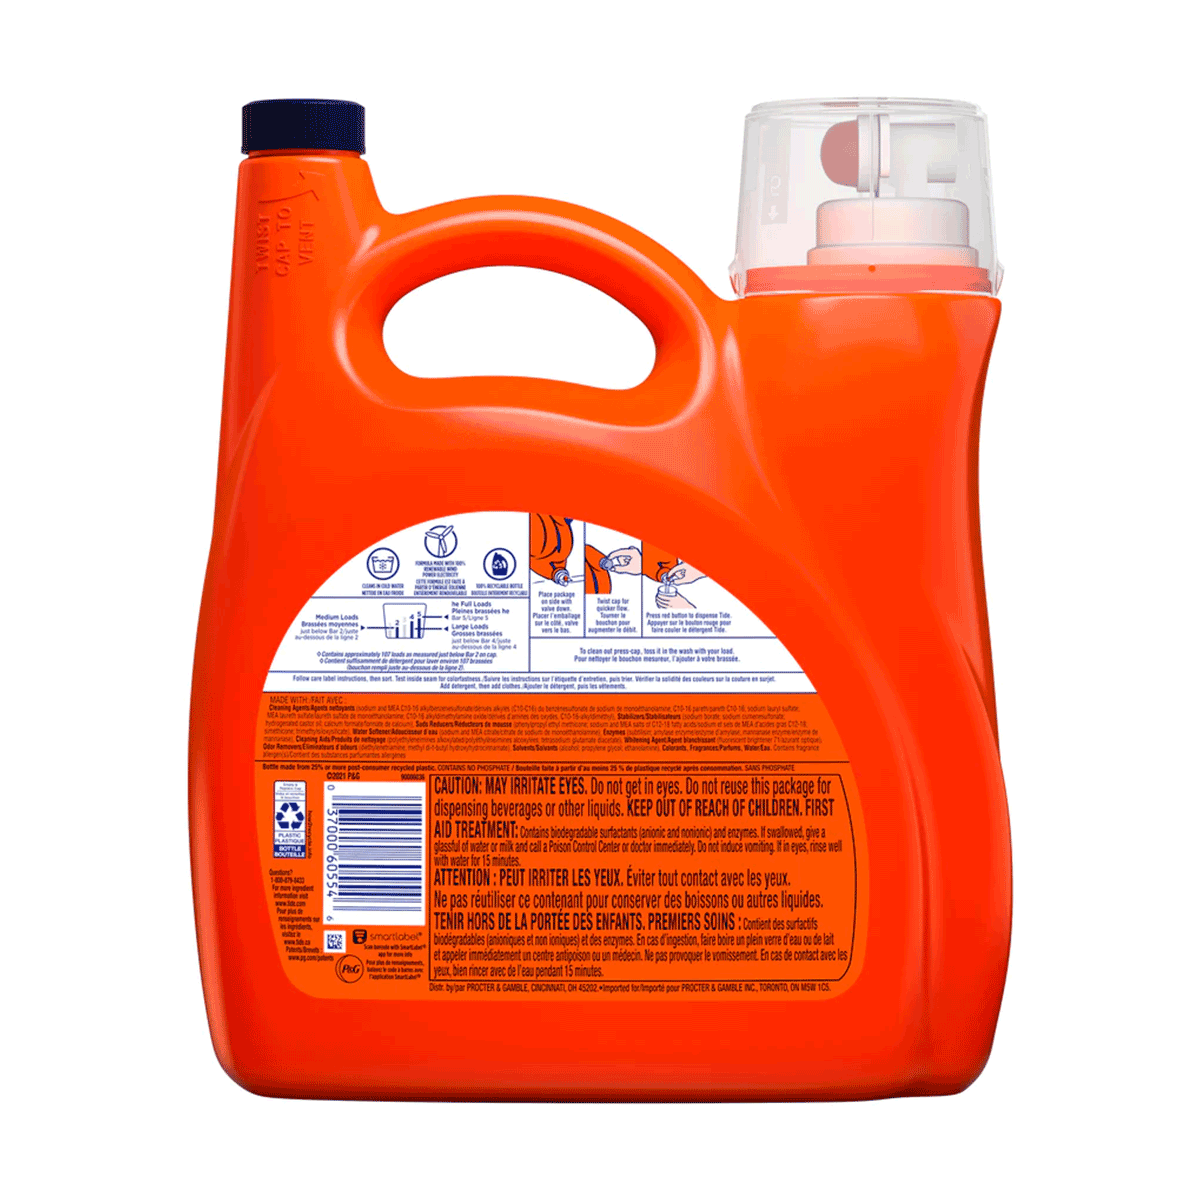 Detergente líquido concentrado para ropa Tide Original 4,55 litros (107 cargas)